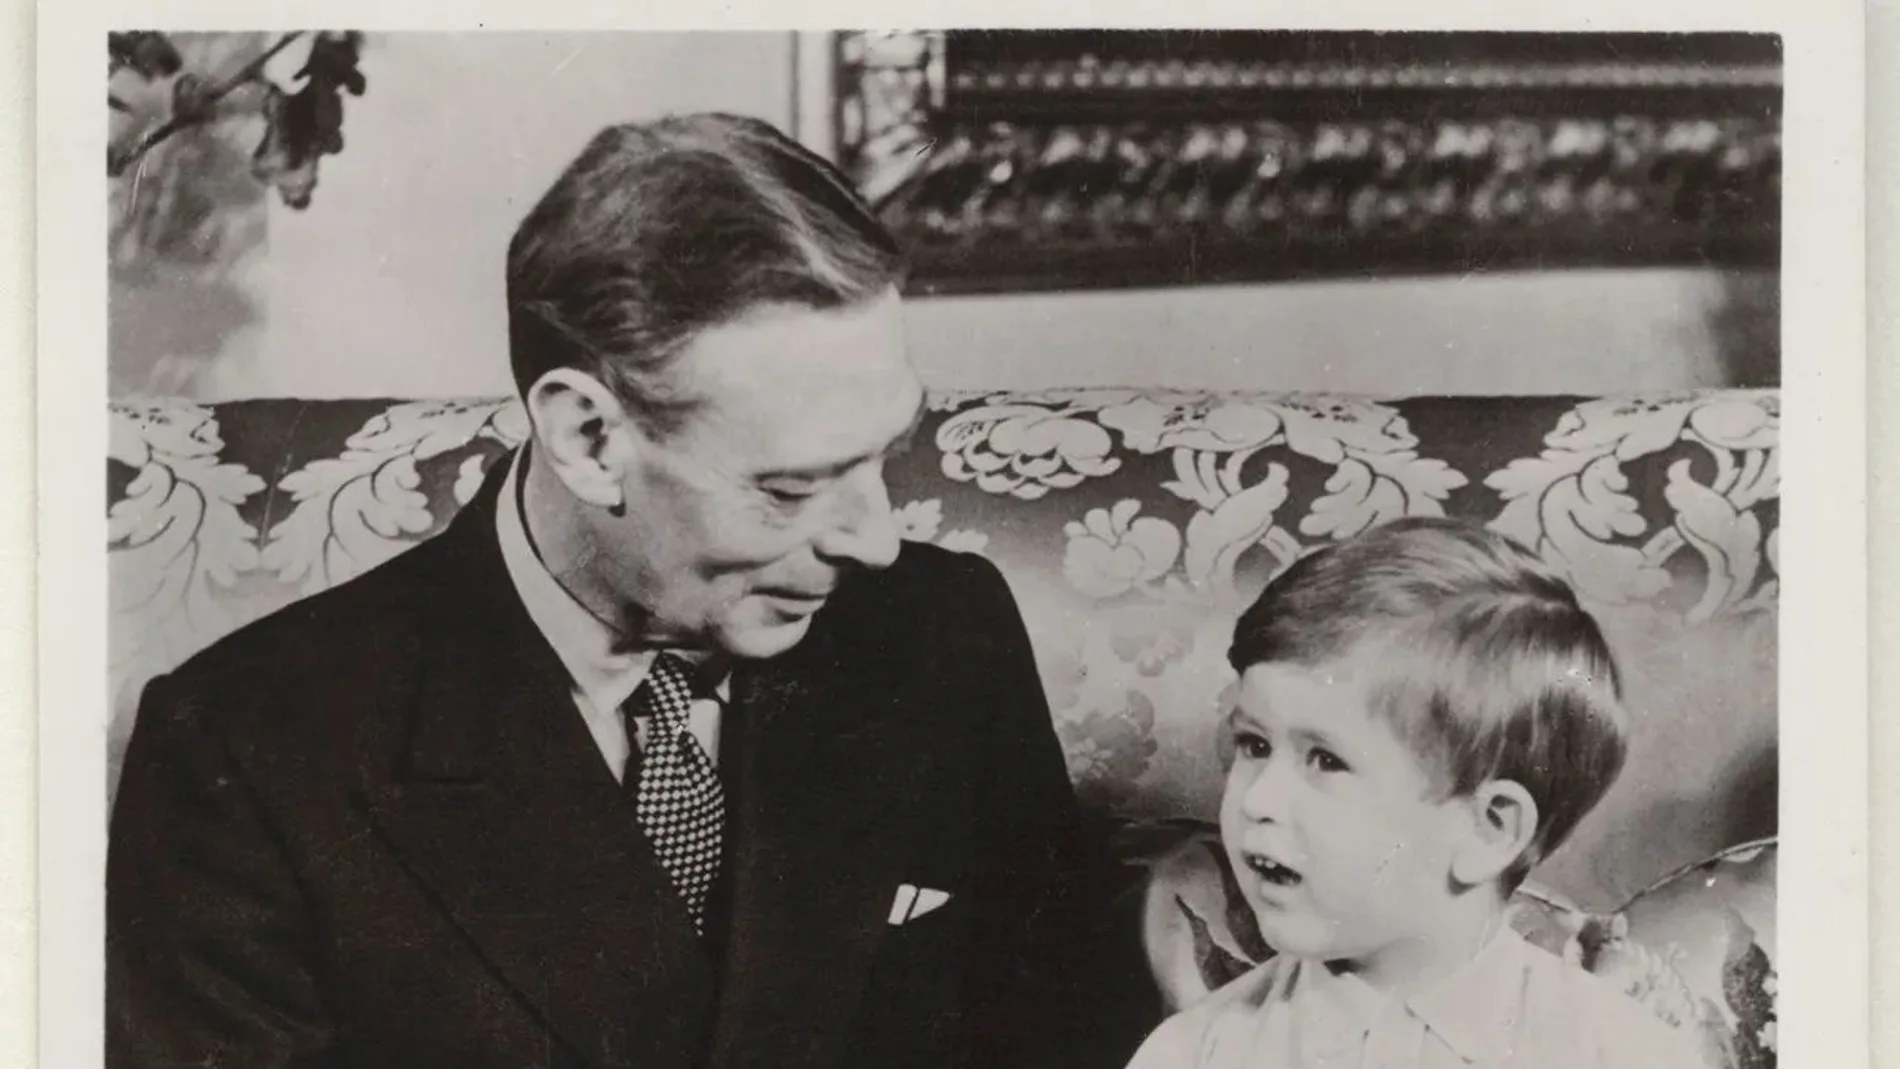 El príncipe Carlos con el rey Jorge VI de Inglaterra